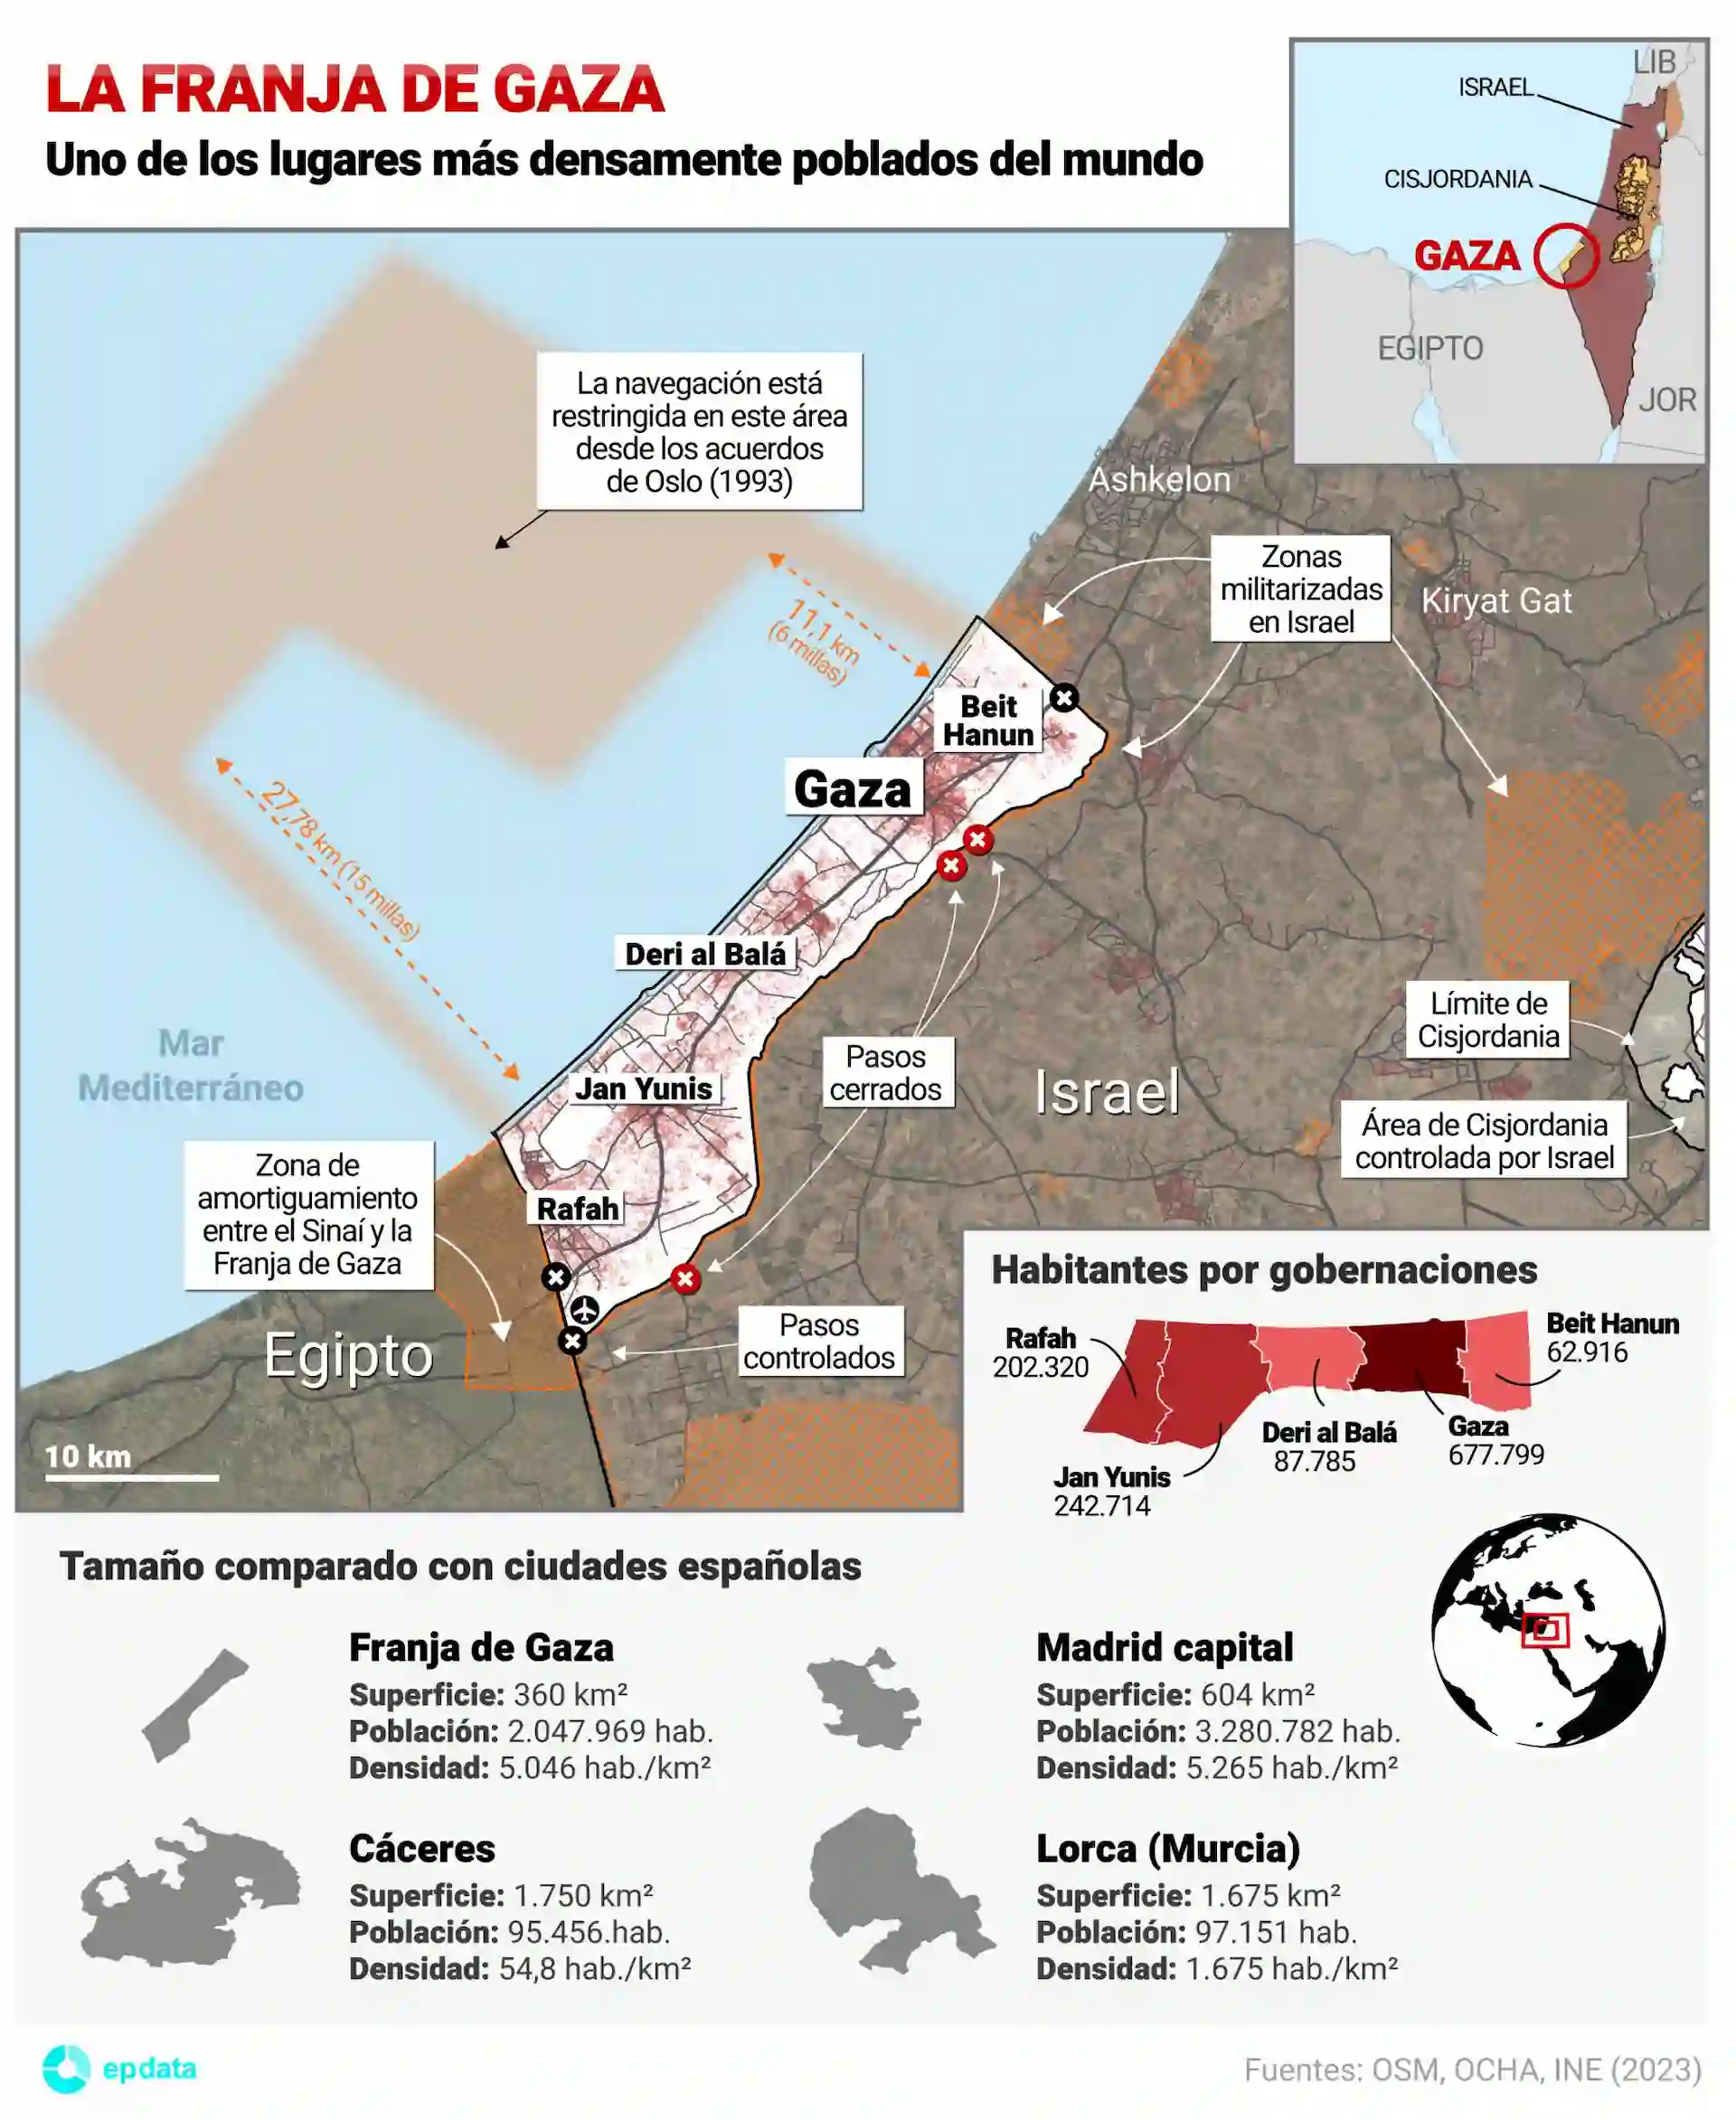 Mapa y datos de la Franja de Gaza, uno de los lugares más densamente poblados del mundo / Imfografía: EP